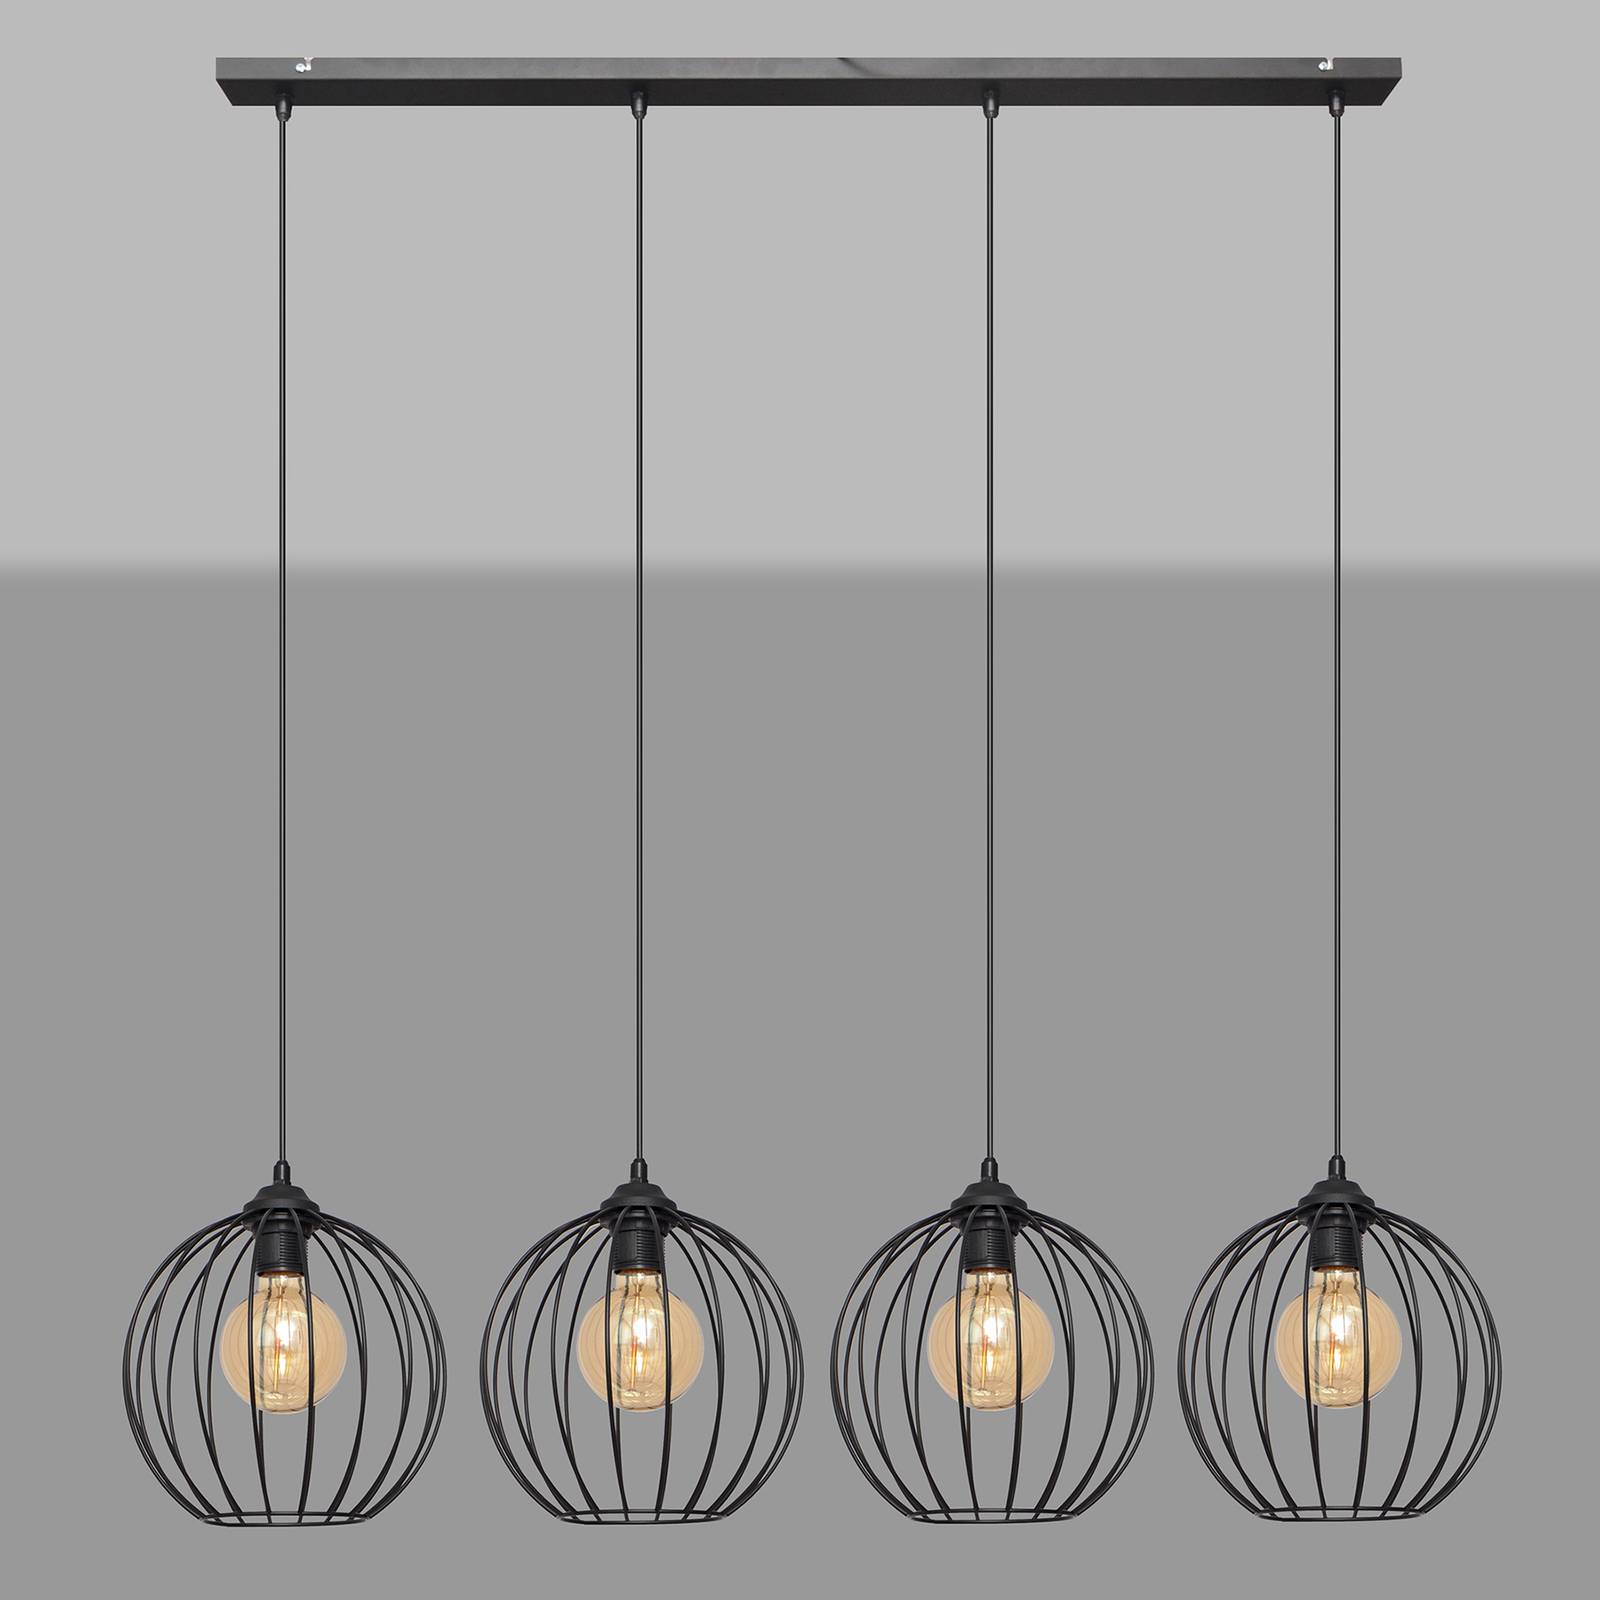 Hanglamp Cumera in lange vorm, 4-lamps